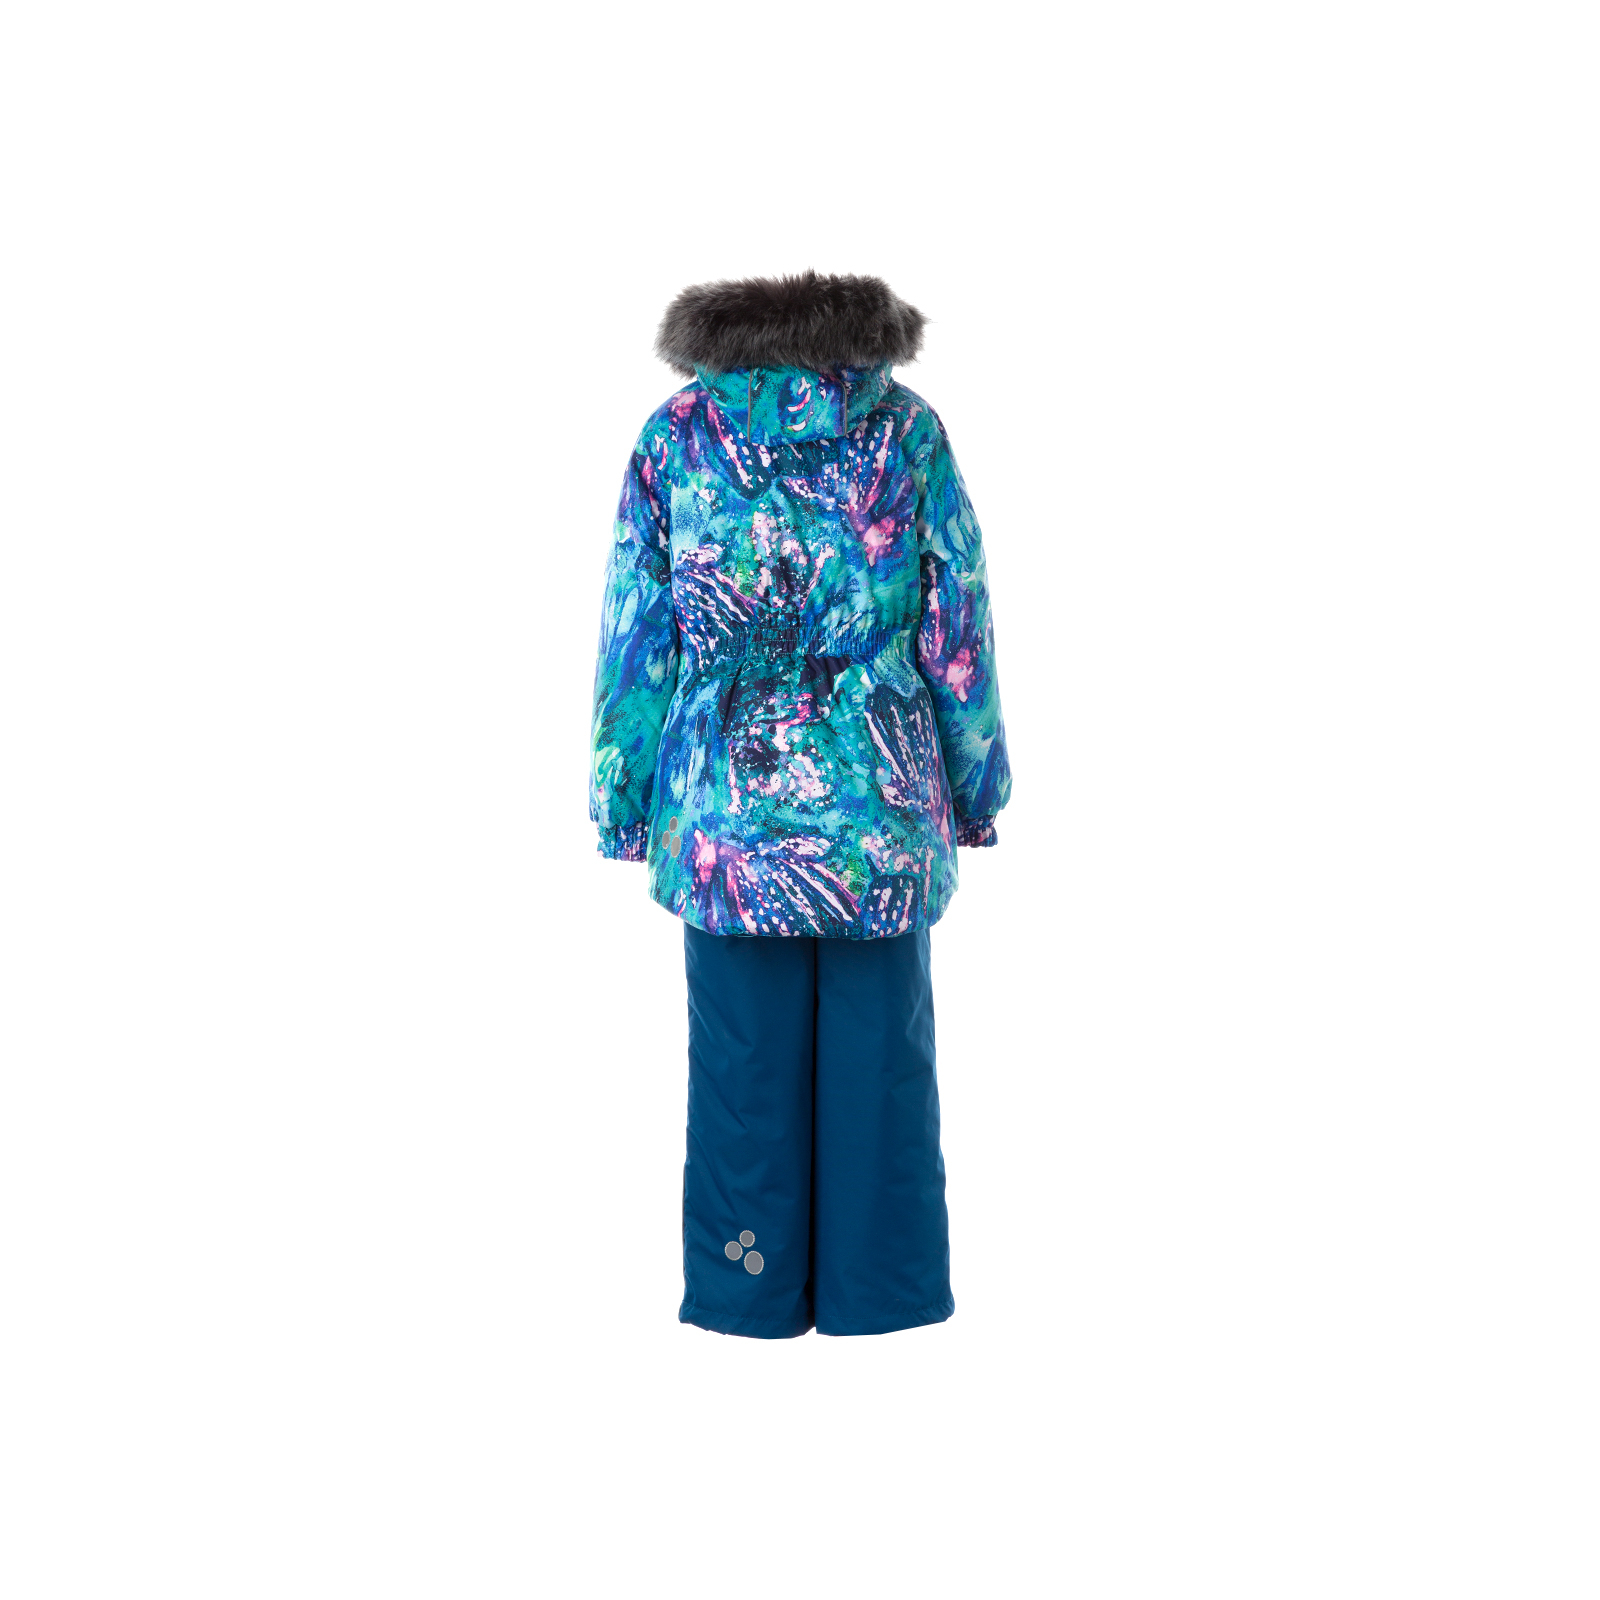 Комплект верхней одежды Huppa RENELY 1 41850130 голубой с принтом/бирюзово-зелёный 122 (4741468979991) изображение 2